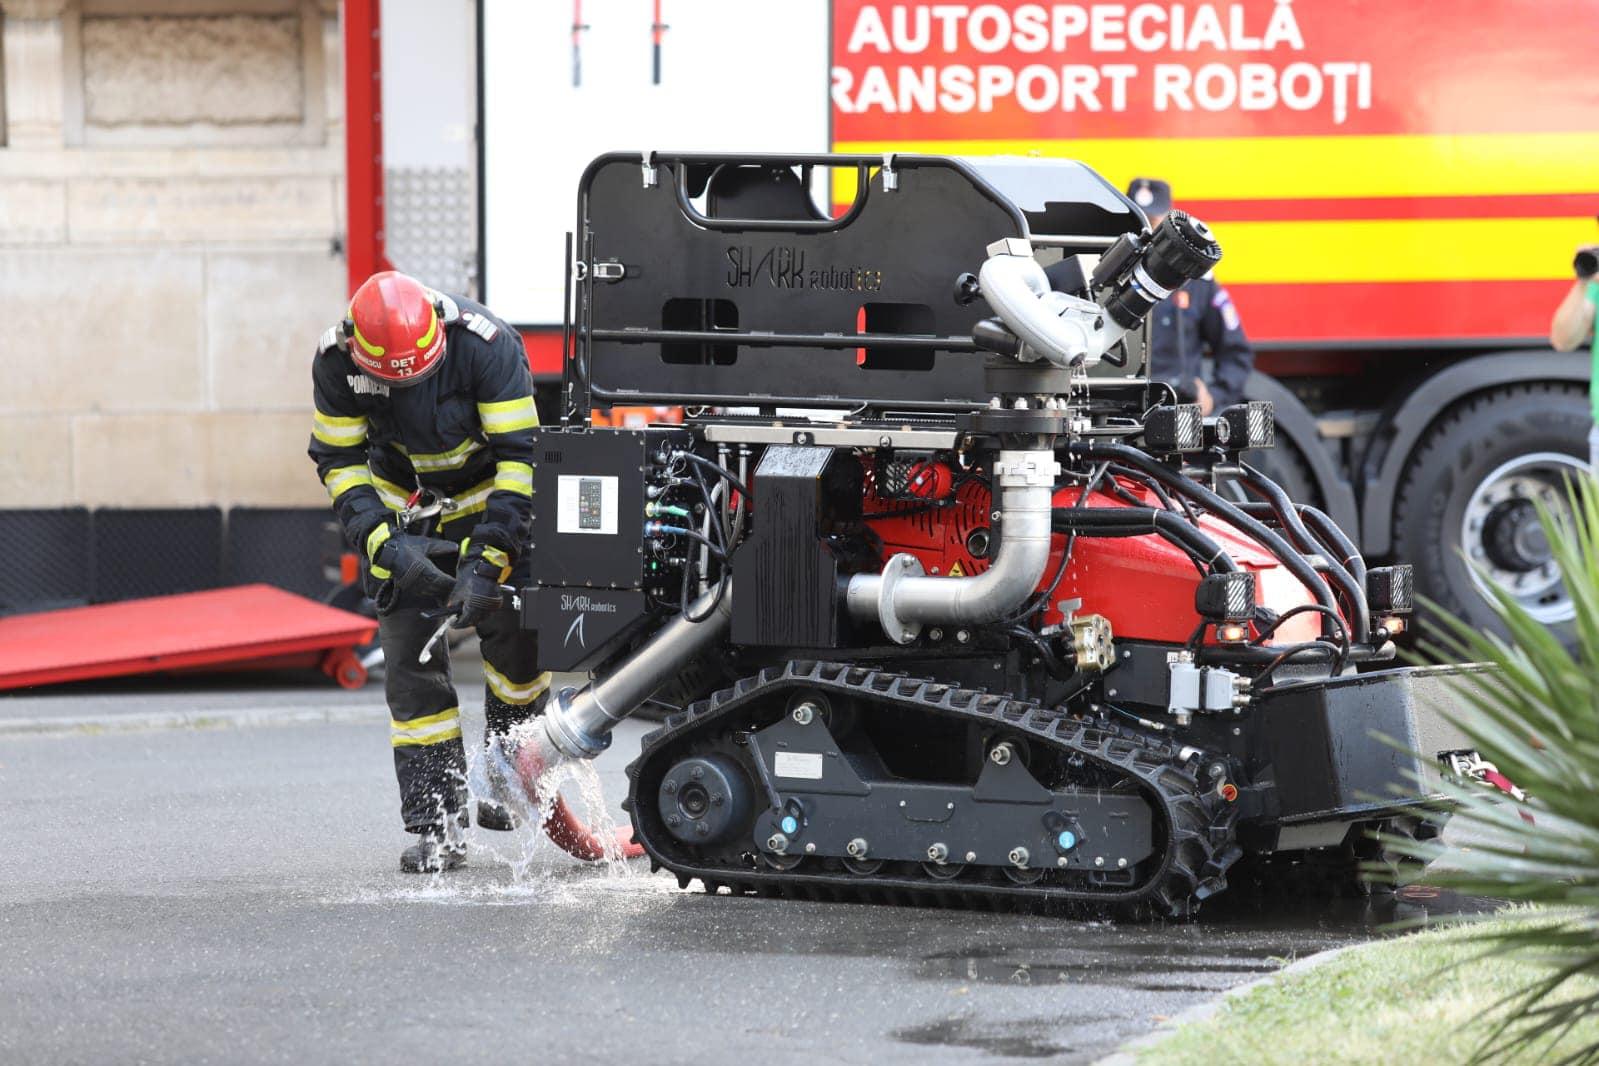 Patru autospeciale robotice, menite să uşureze munca pompierilor, au intrat în dotarea IGSU. Cum funcţionează roboţii care vor putea salva vieţi